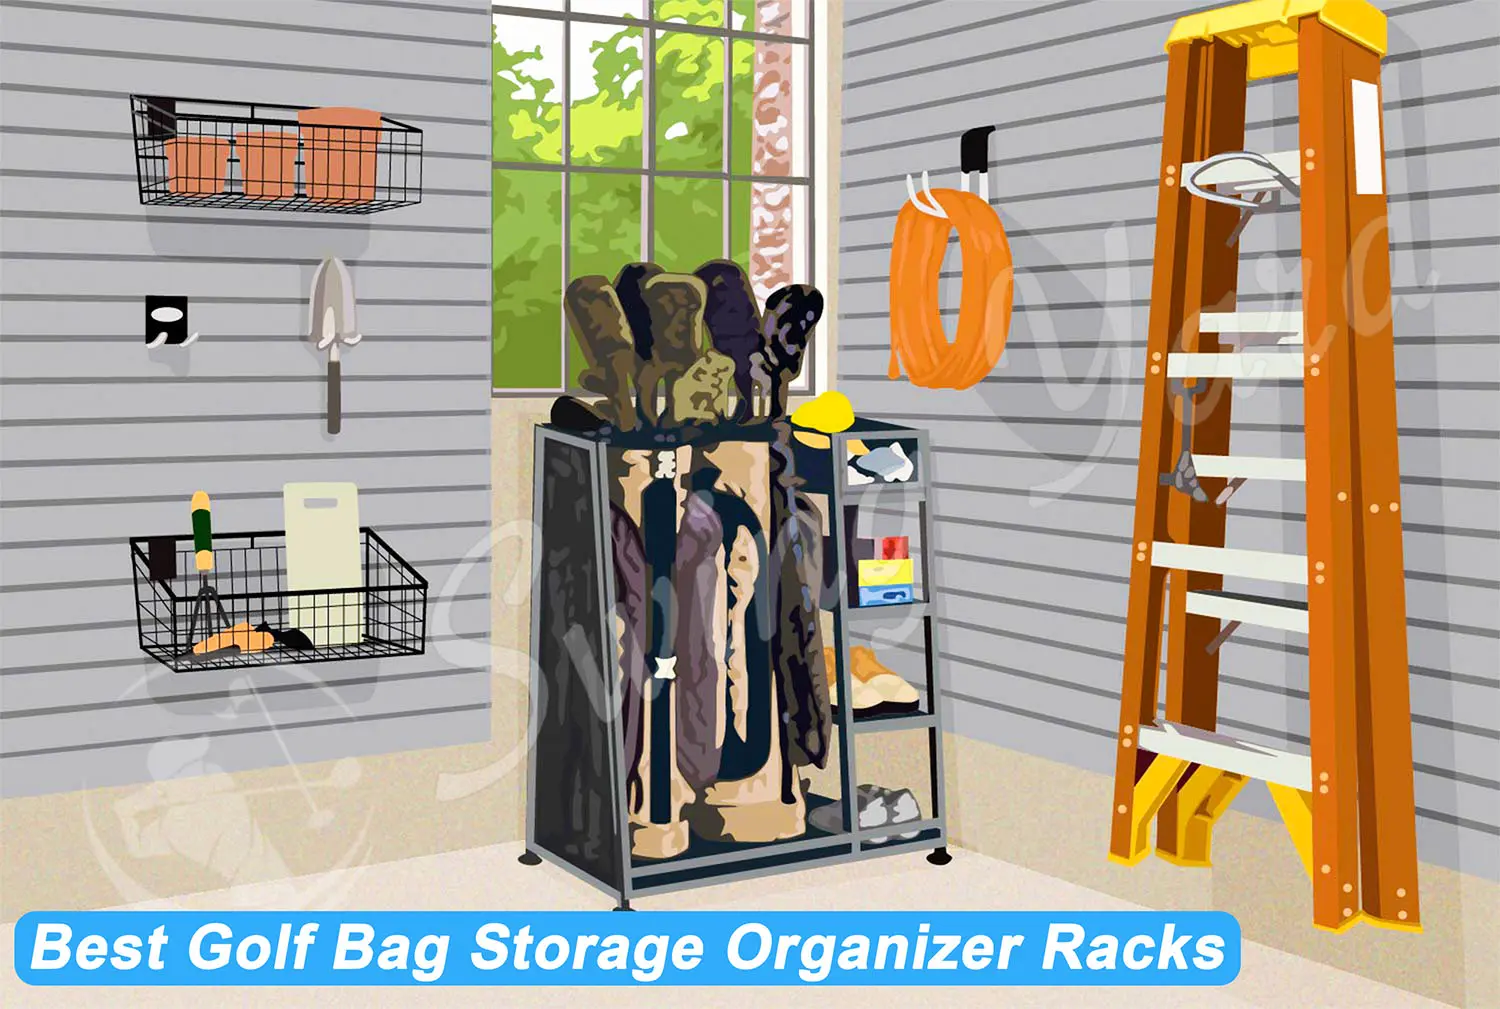 Adjustable handbag stand single hook rack bag shelf hanger